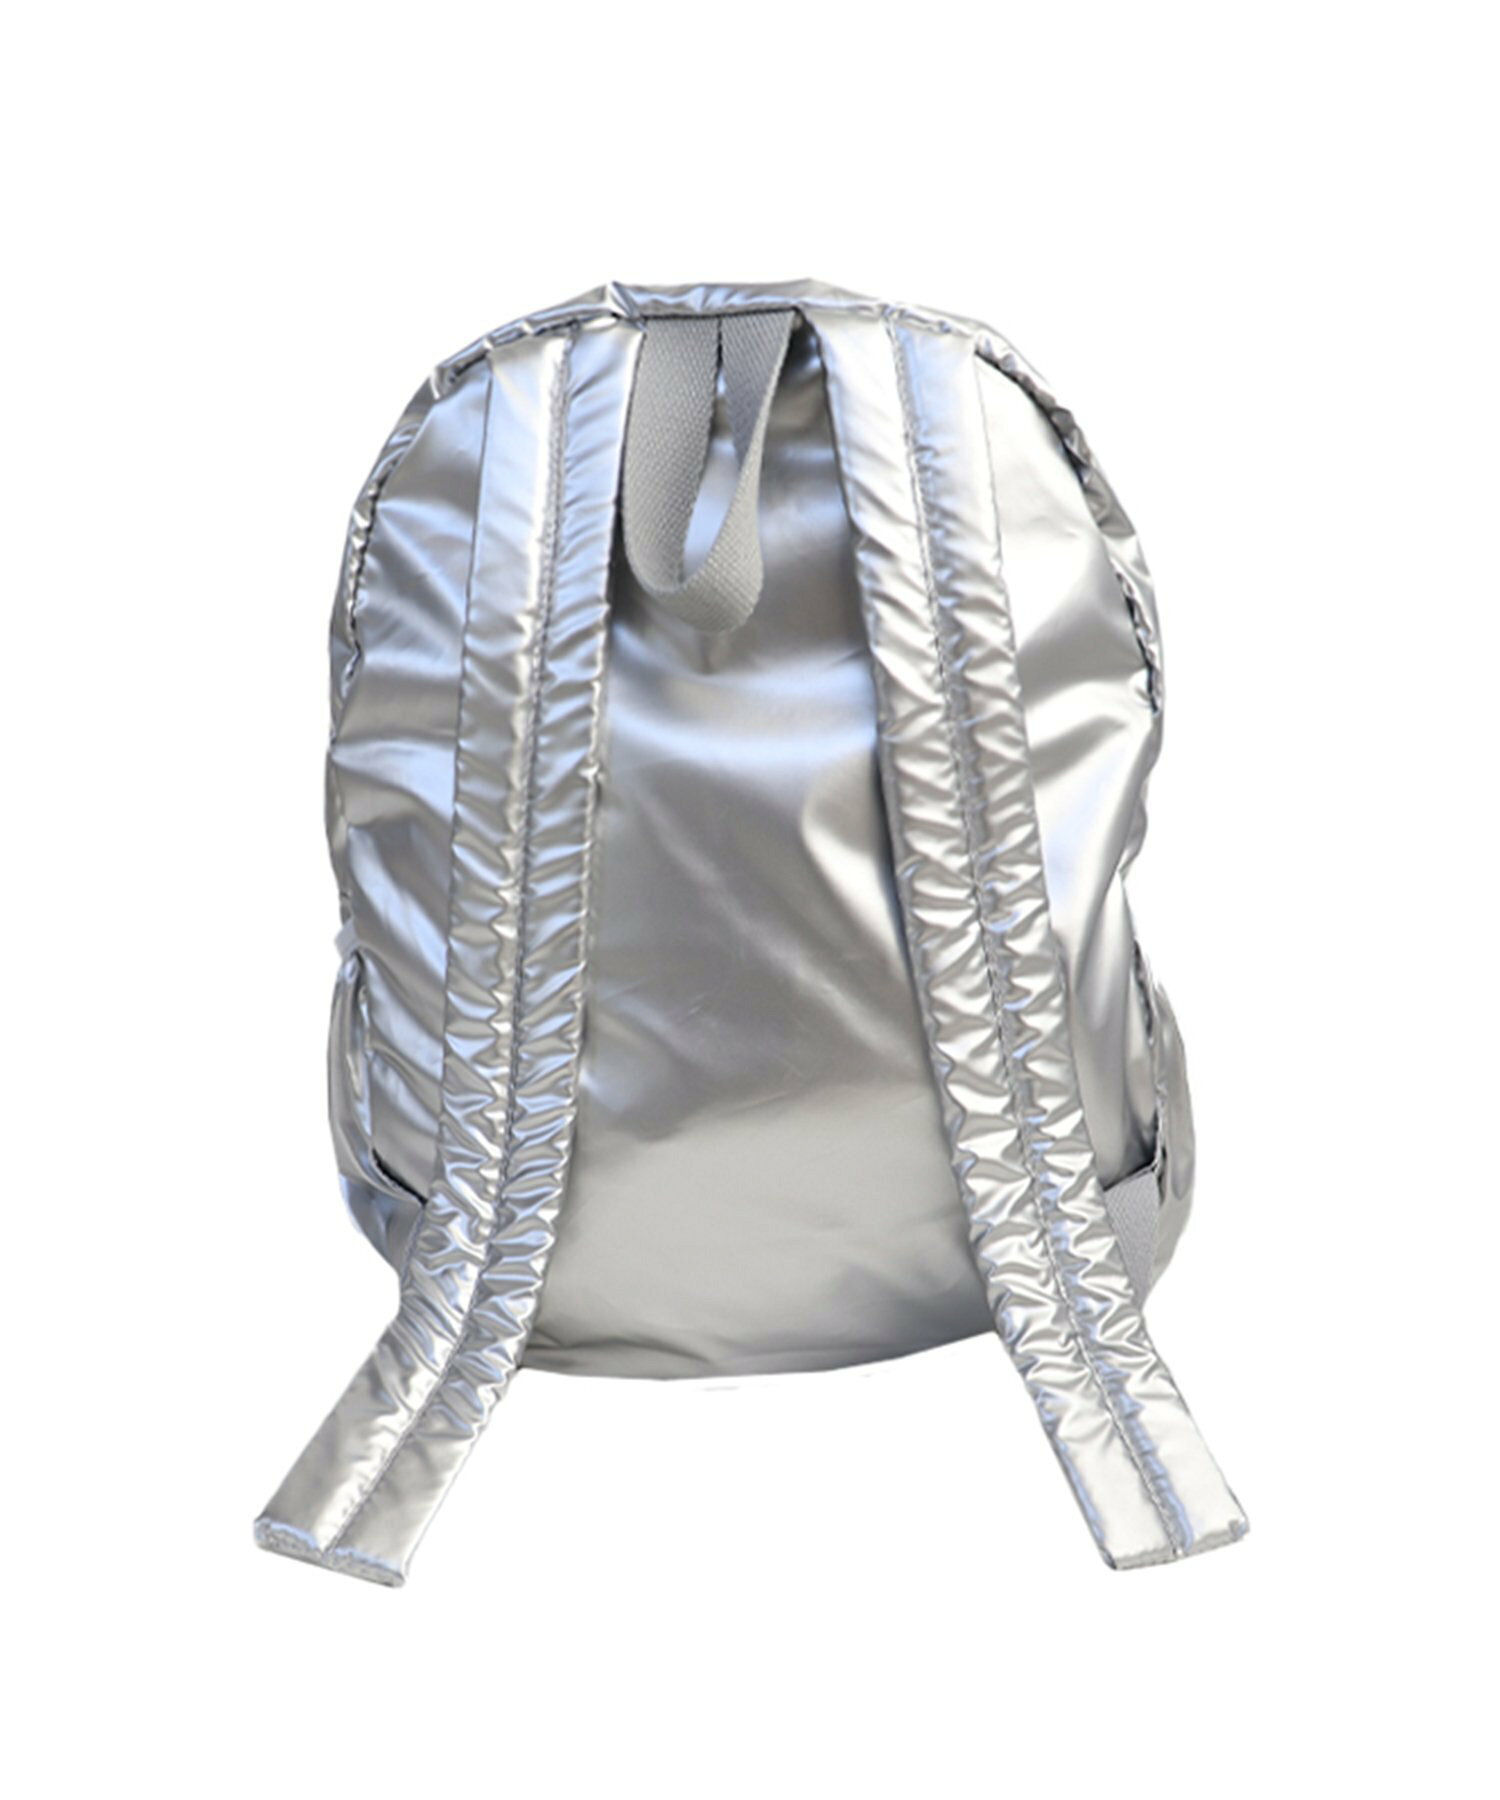 Nylon metal backpack / トレンド カラー シルバー ブラック バックパック